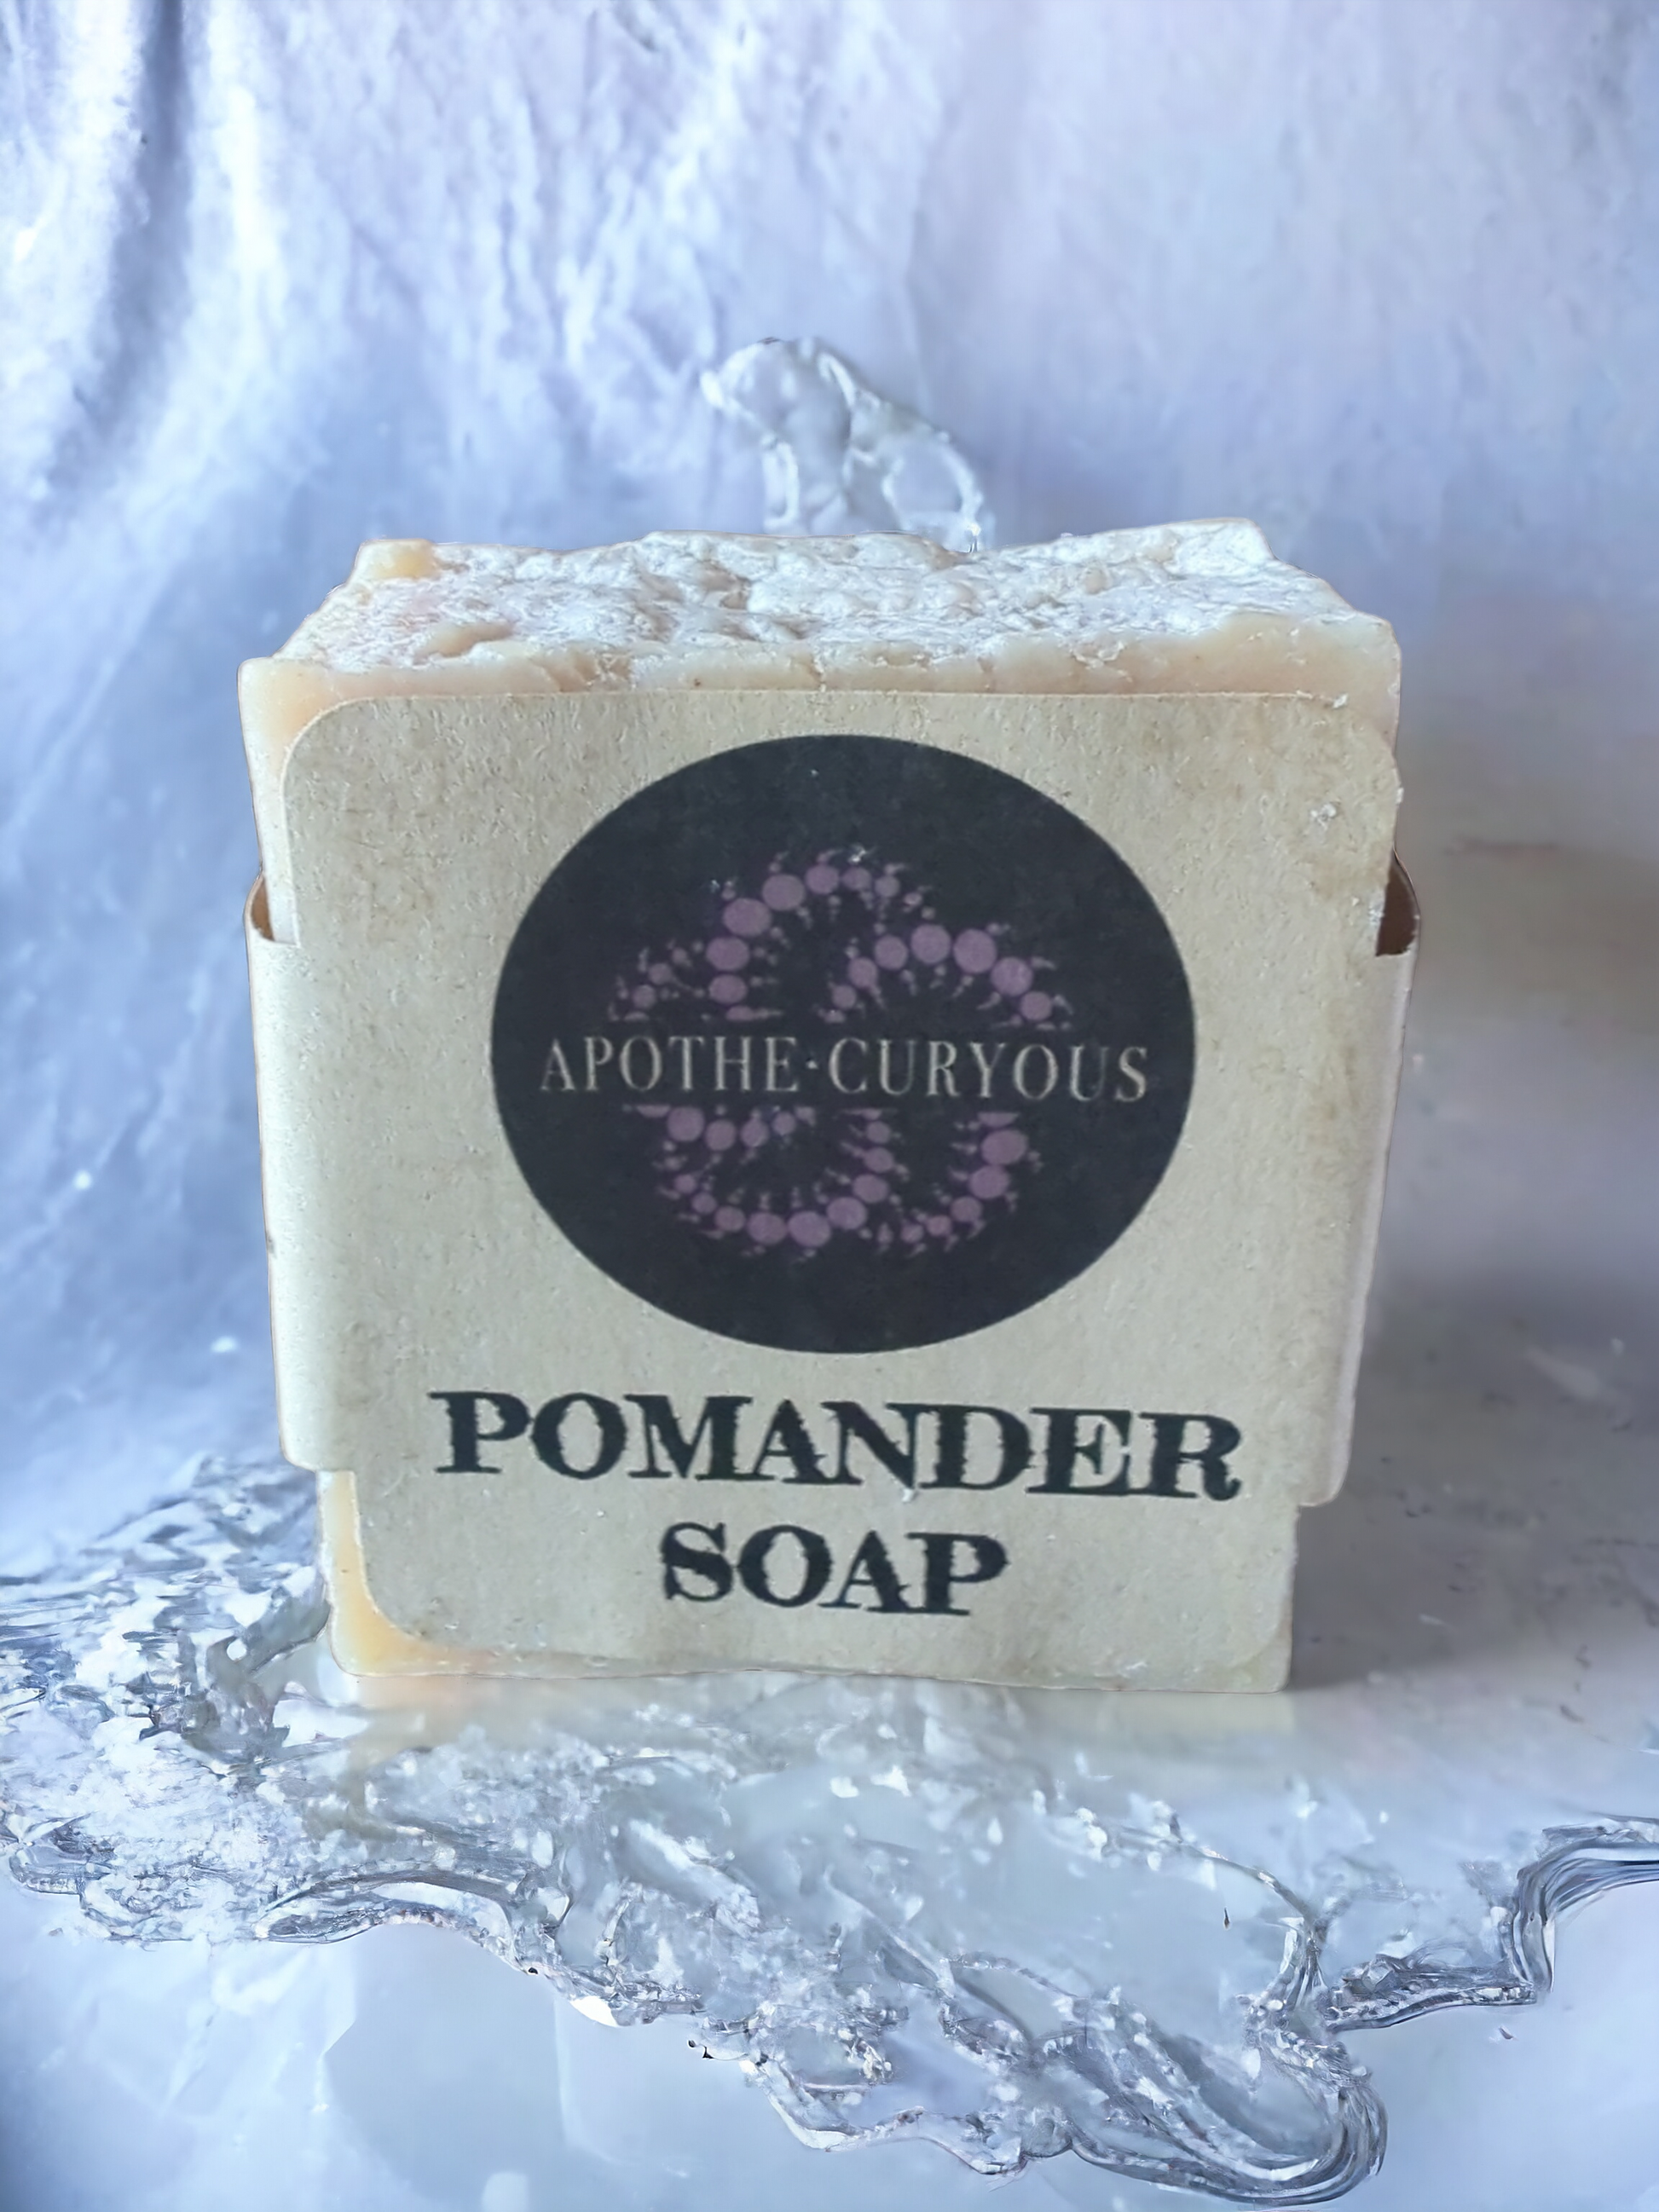 Pomander soap, Apothecuryous